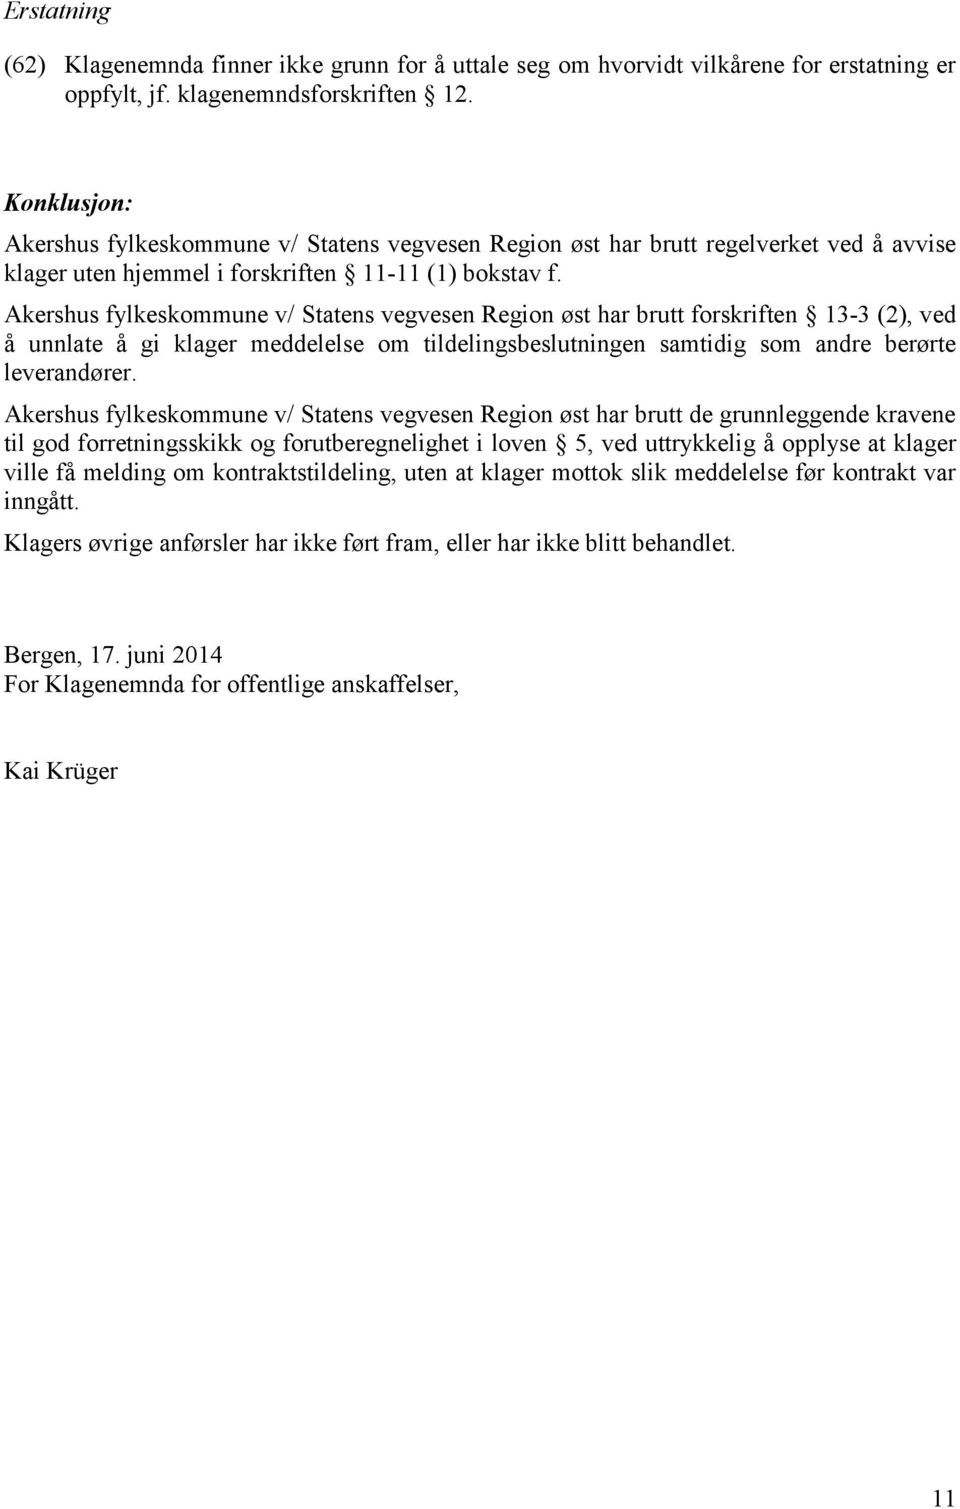 Akershus fylkeskommune v/ Statens vegvesen Region øst har brutt forskriften 13-3 (2), ved å unnlate å gi klager meddelelse om tildelingsbeslutningen samtidig som andre berørte leverandører.